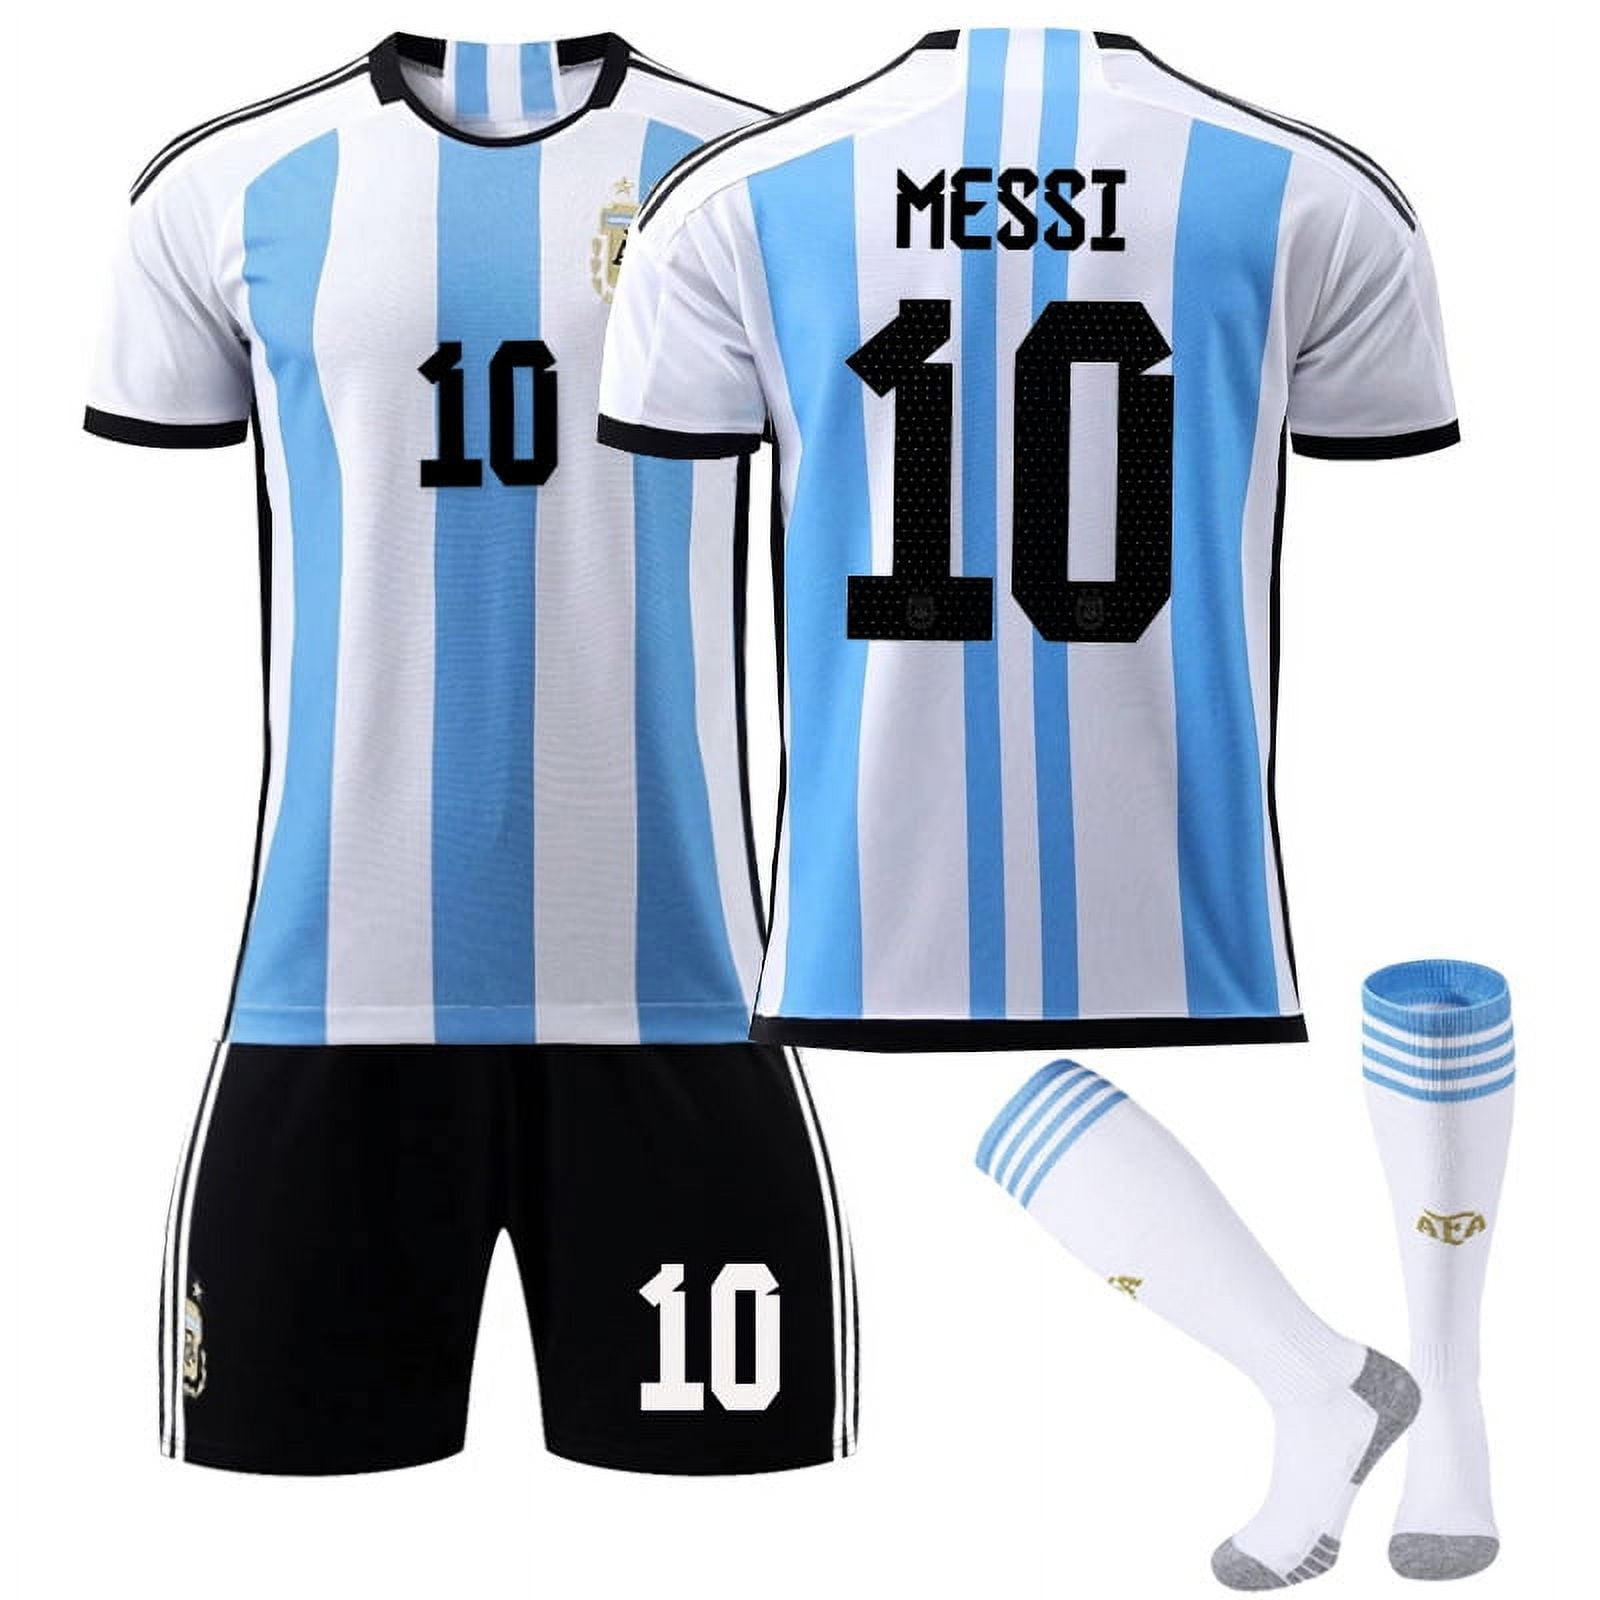 argentina jersey online